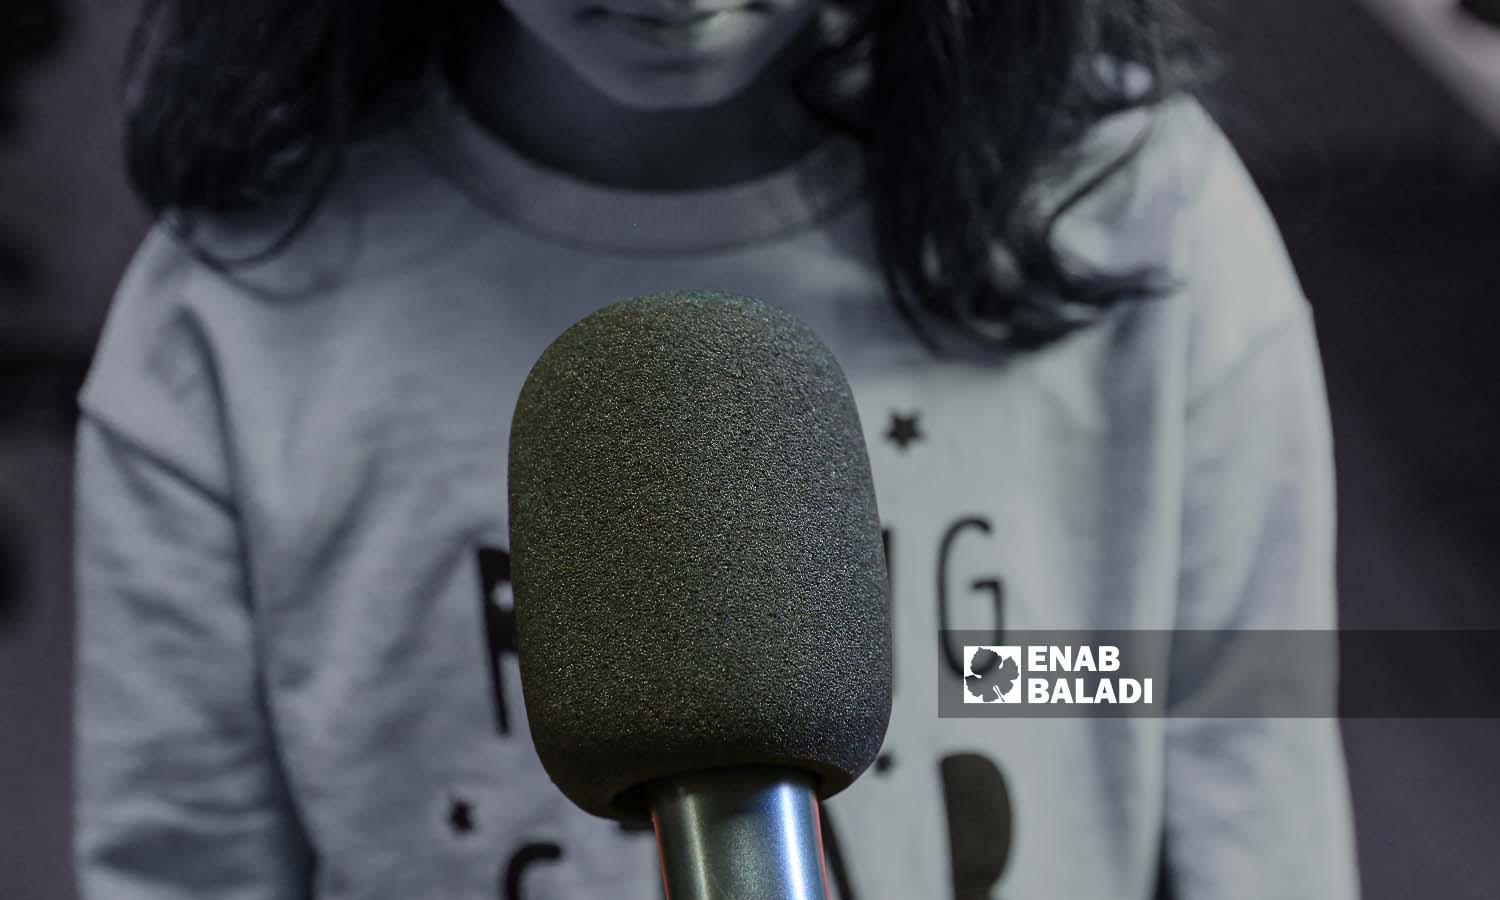 A journalist interviewing a minor girl (Abdulmoeen Homs)